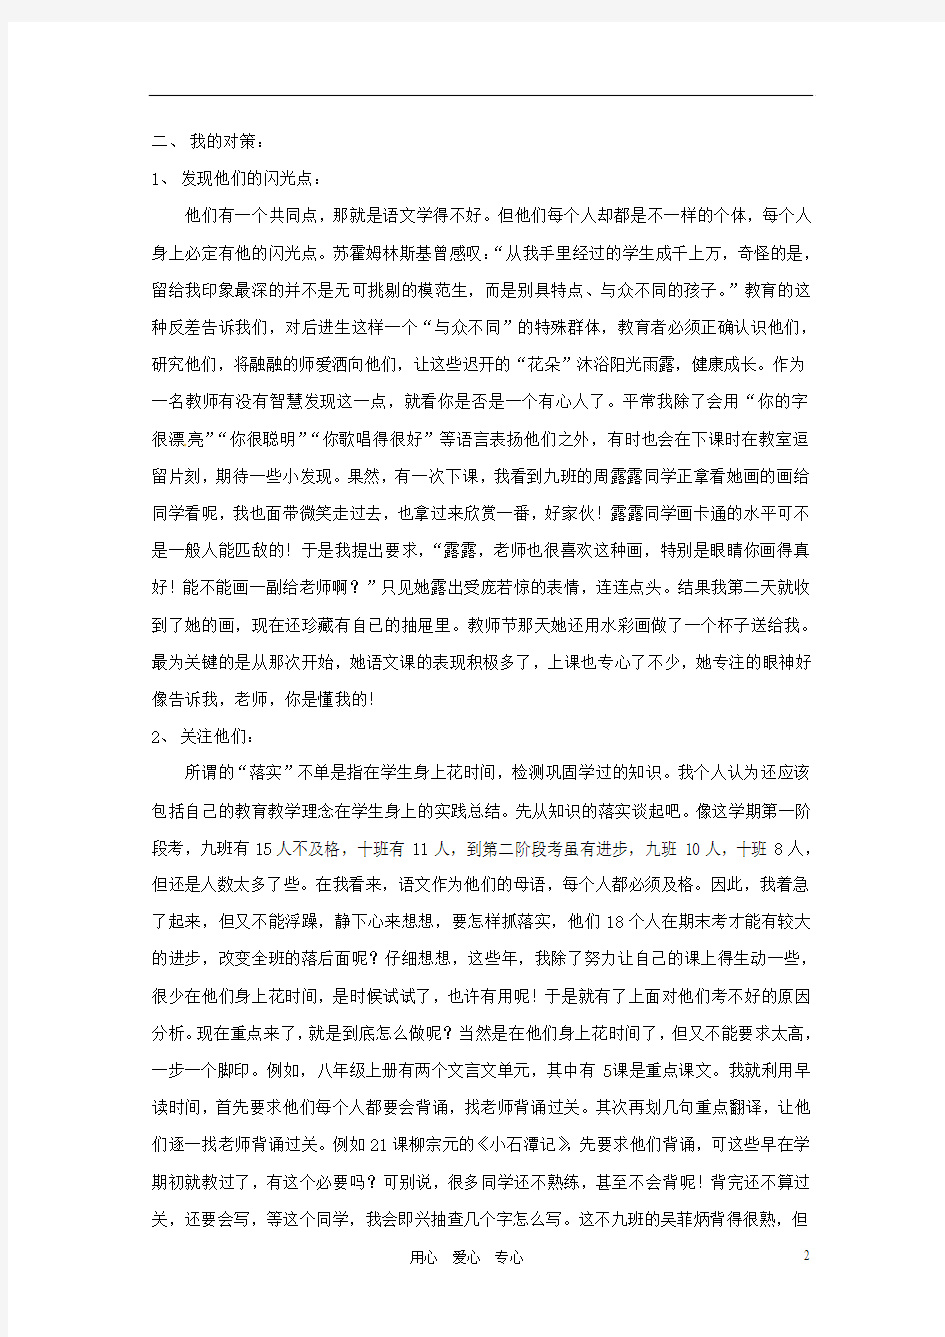 福建省石狮市凤里中学初中语文教学论文 做一个教学的有心人 语文版